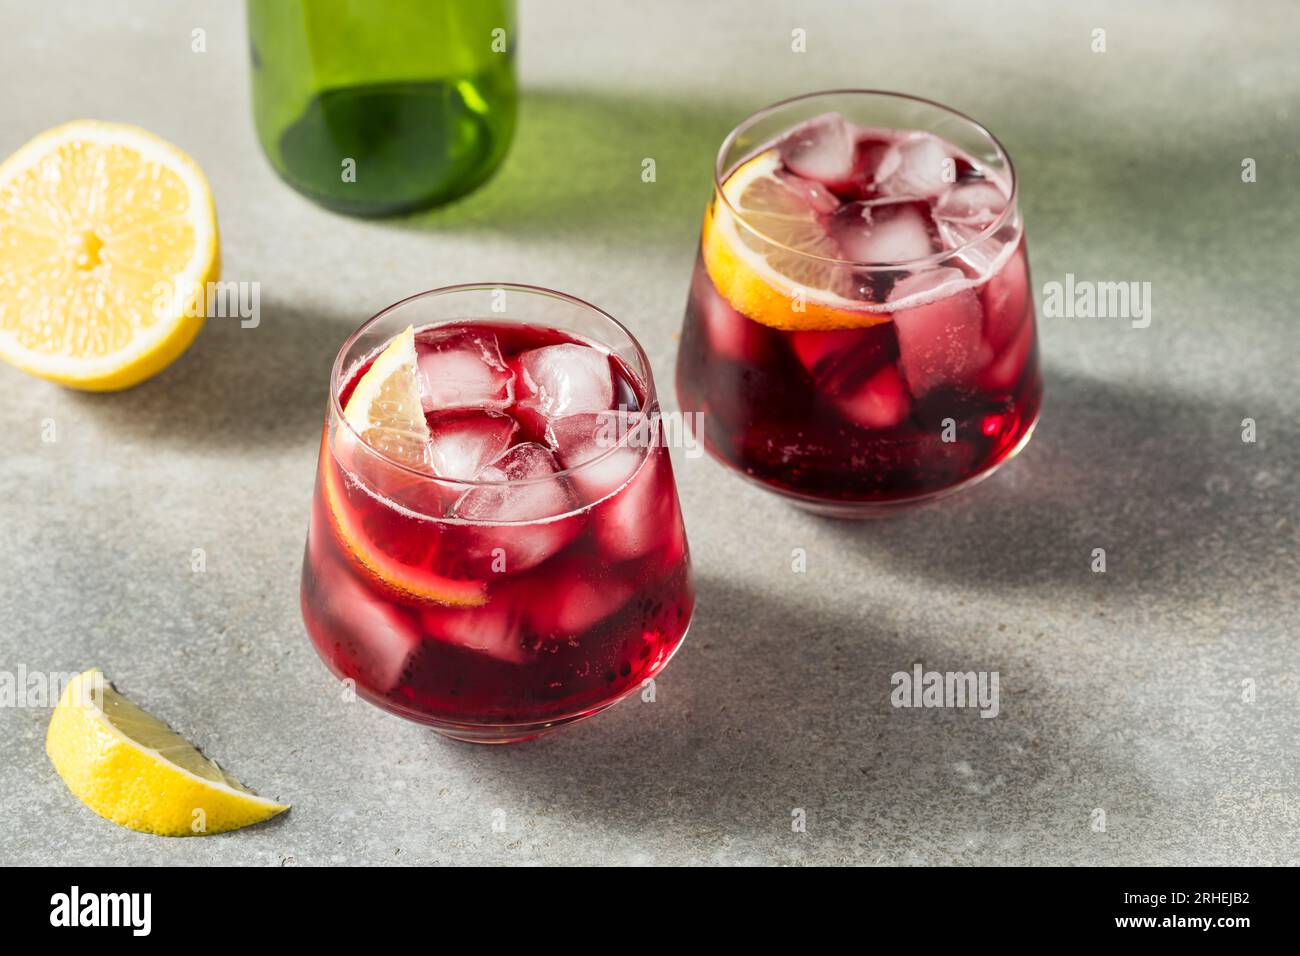 Vino frizzante freddo Tinto De Verano con limone Foto Stock